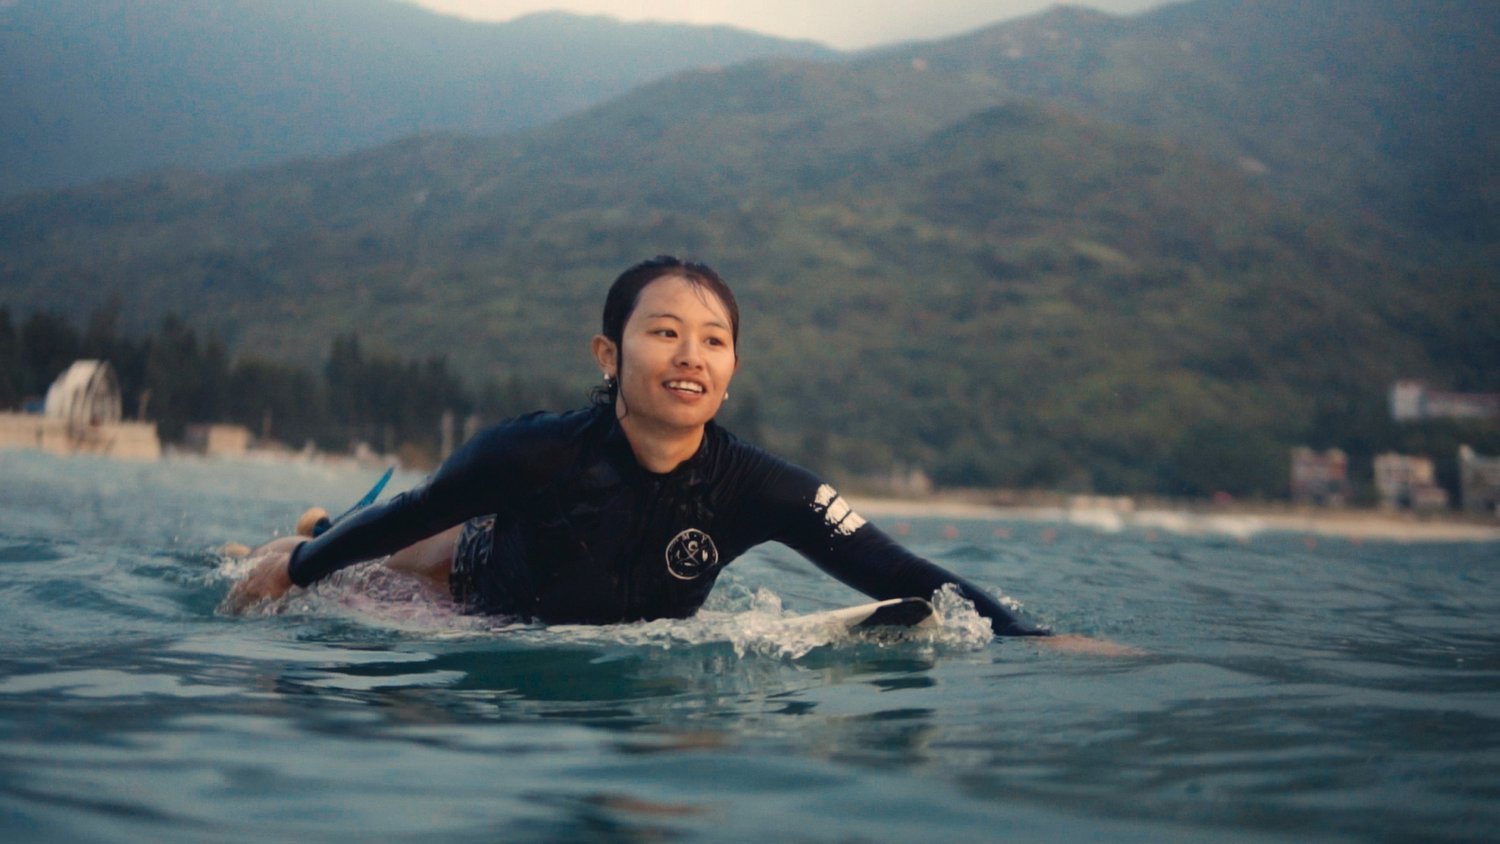 纪录片探讨中国新兴的奥运冲浪项目| 汤森港电影节